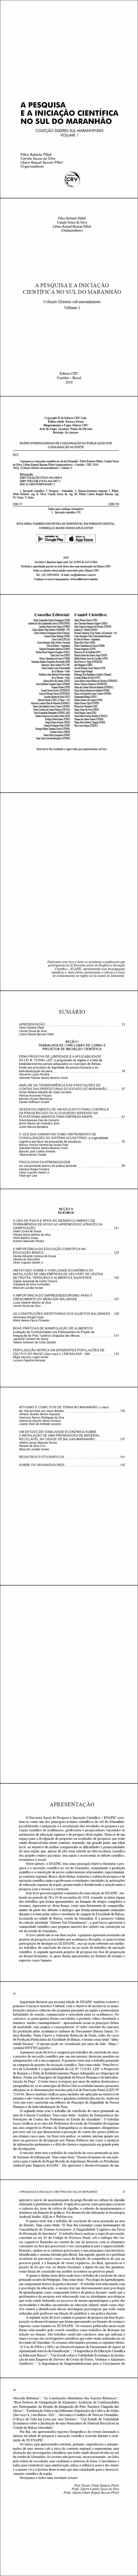 A PESQUISA E A INICIAÇÃO CIENTÍFICA NO SUL DO MARANHÃO  <br>Coleção Dizeres sul-maranhenses  <br>Volume 1